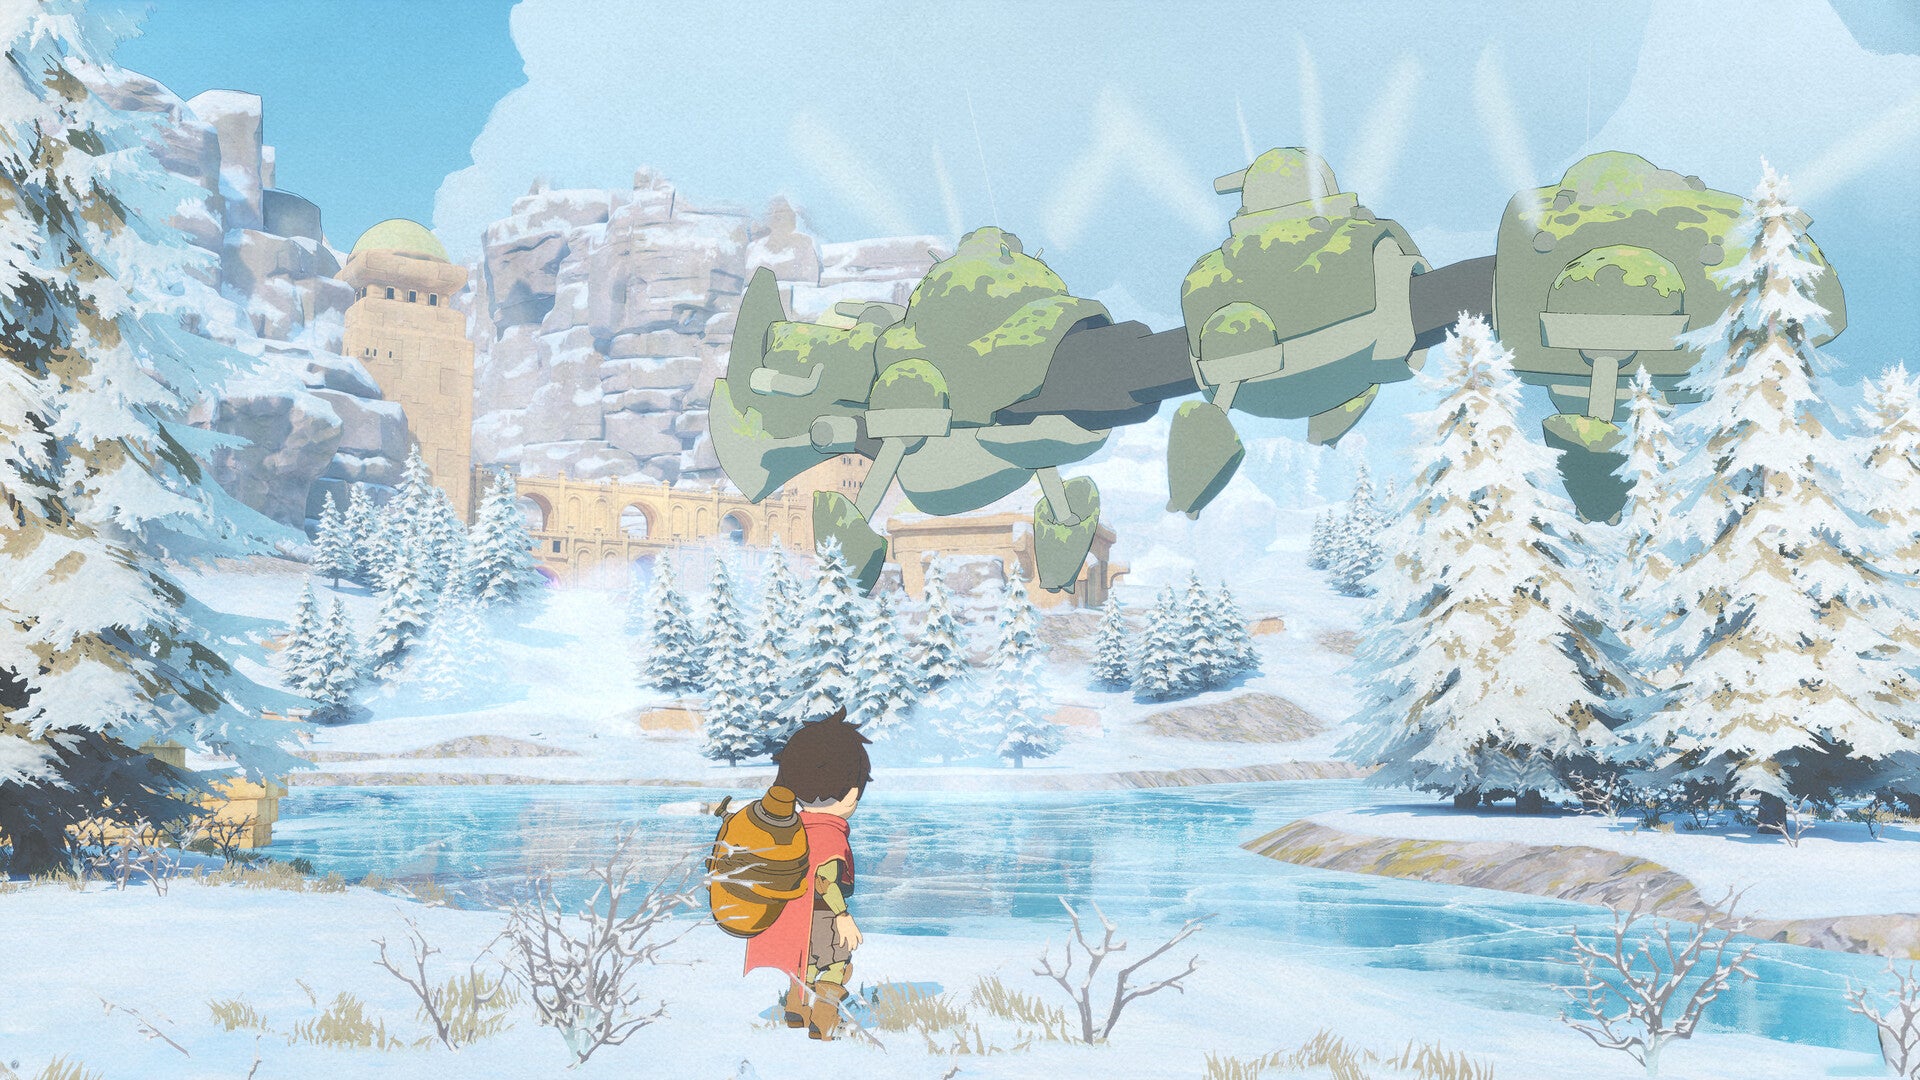 Un garçon se tient dans la neige, regardant une créature volante composée de trois grosses boules rondes. Cela pourrait être une machine. Toute la scène est dessinée de la même manière qu'une animation du Studio Ghibli - avec des couleurs vives mais adoucies, presque comme de l'aquarelle.